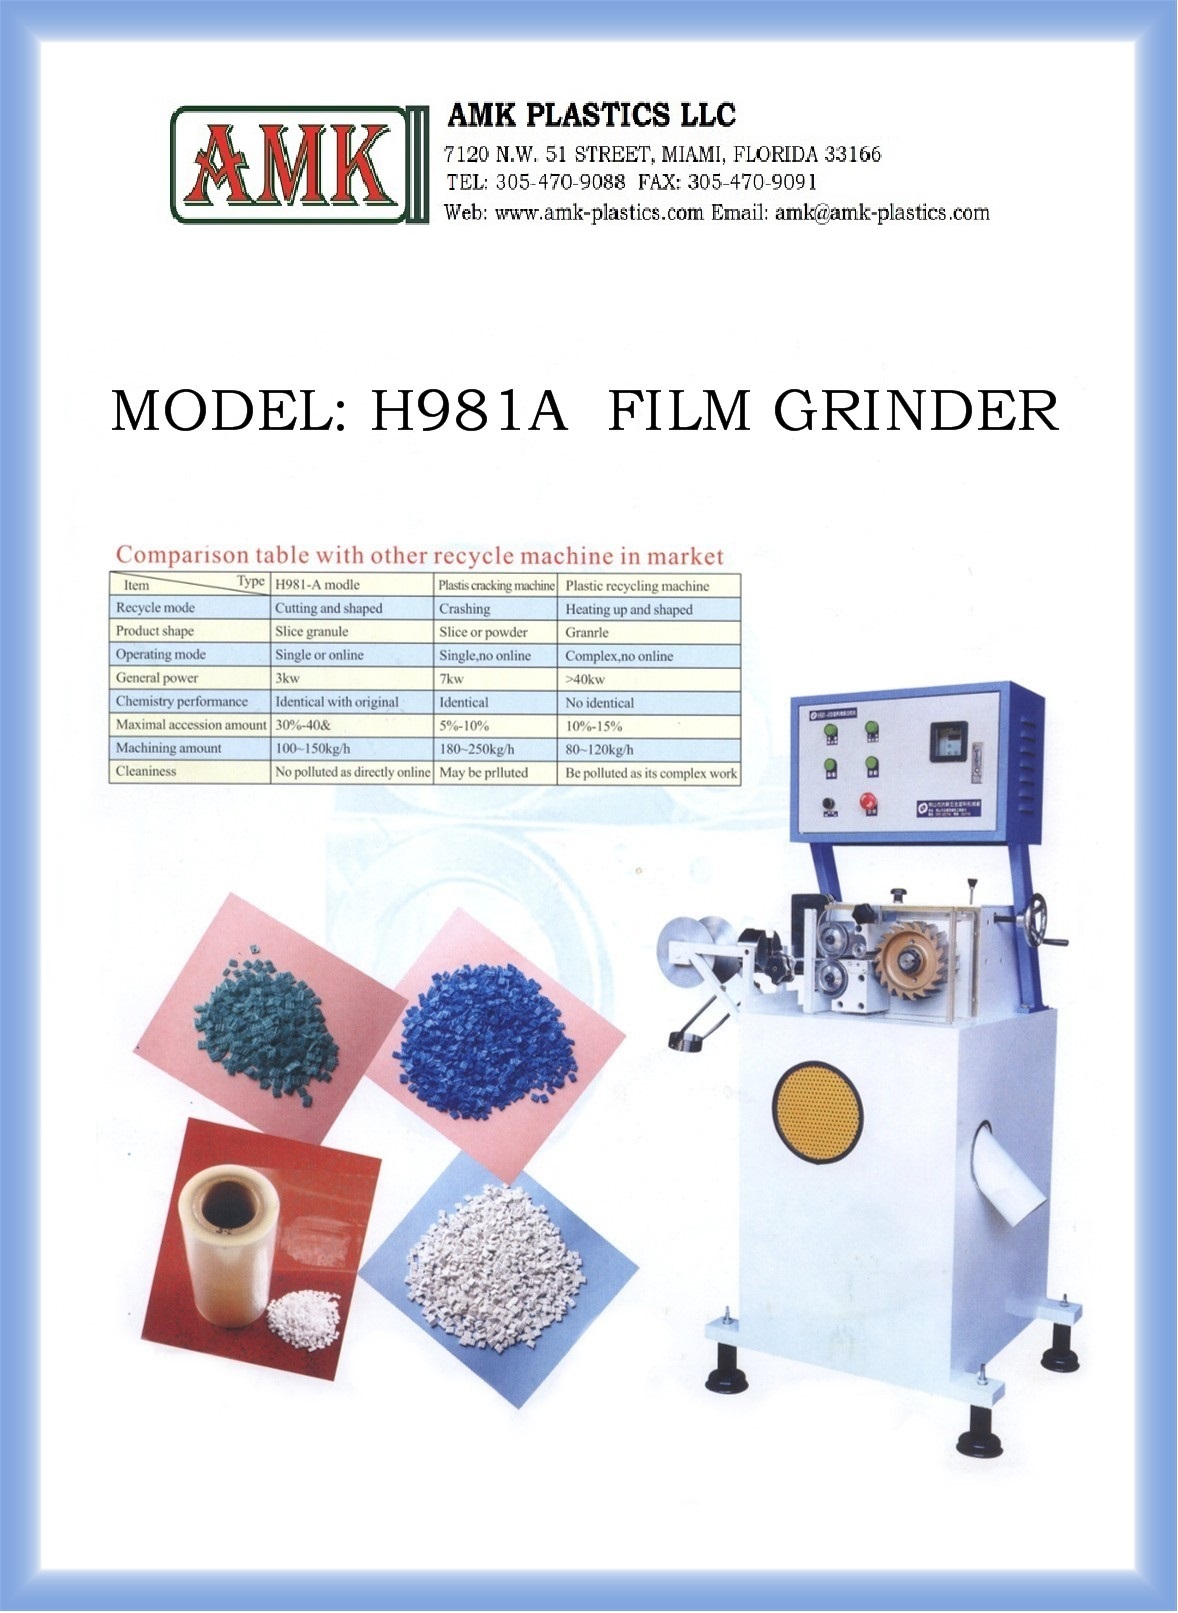 FILM GRINDER H981A